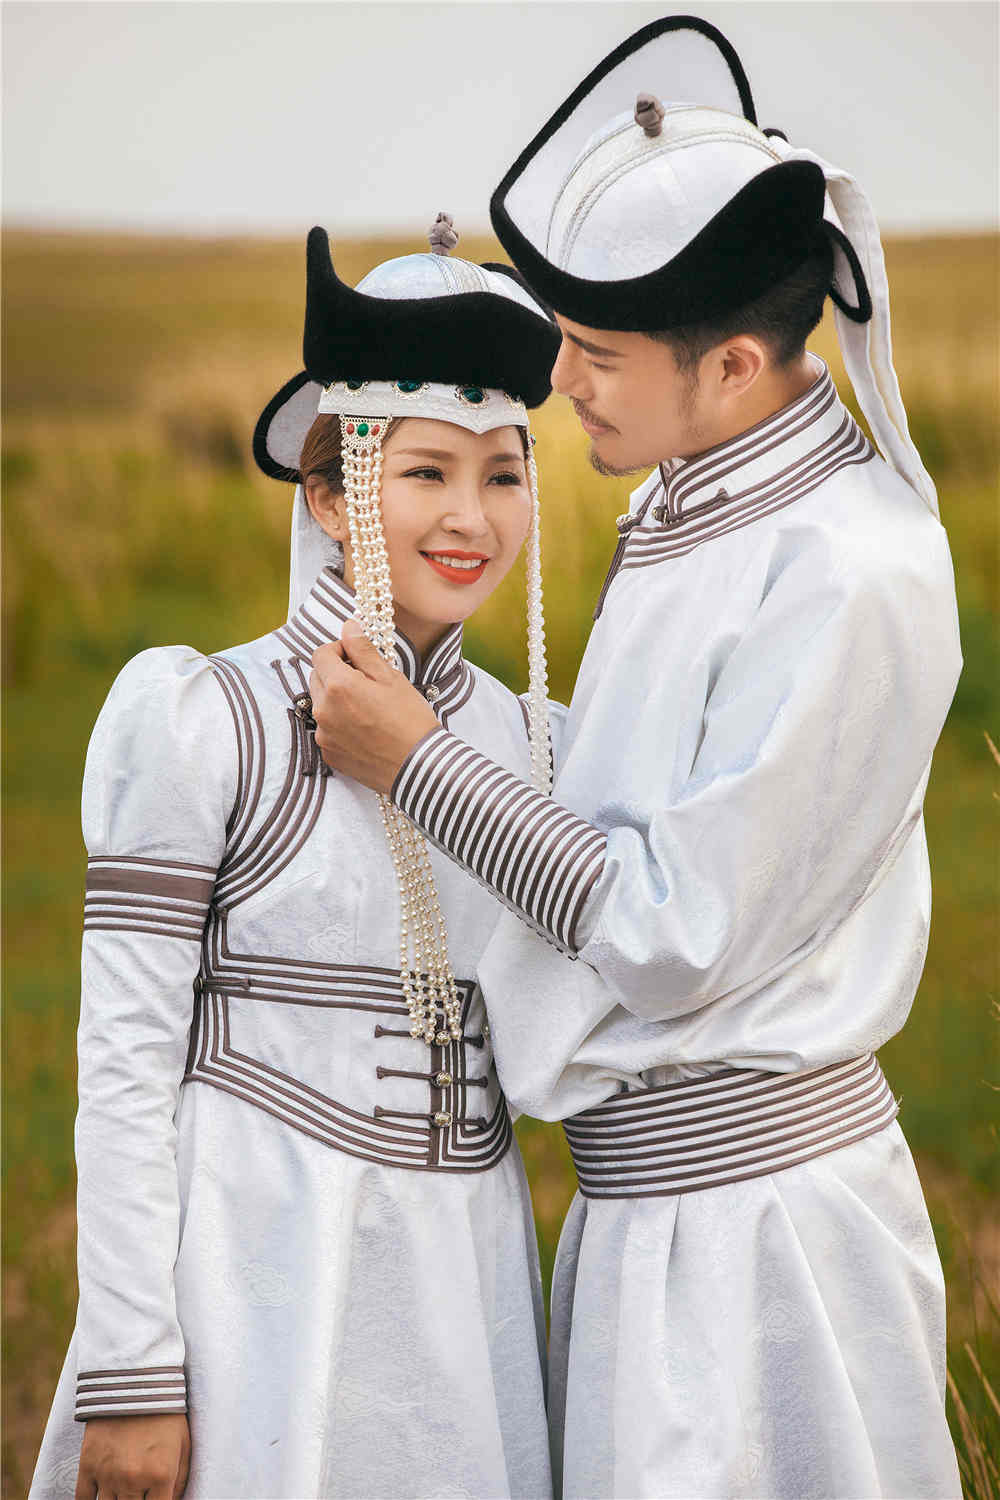 分享一组蒙古风情味的婚纱照